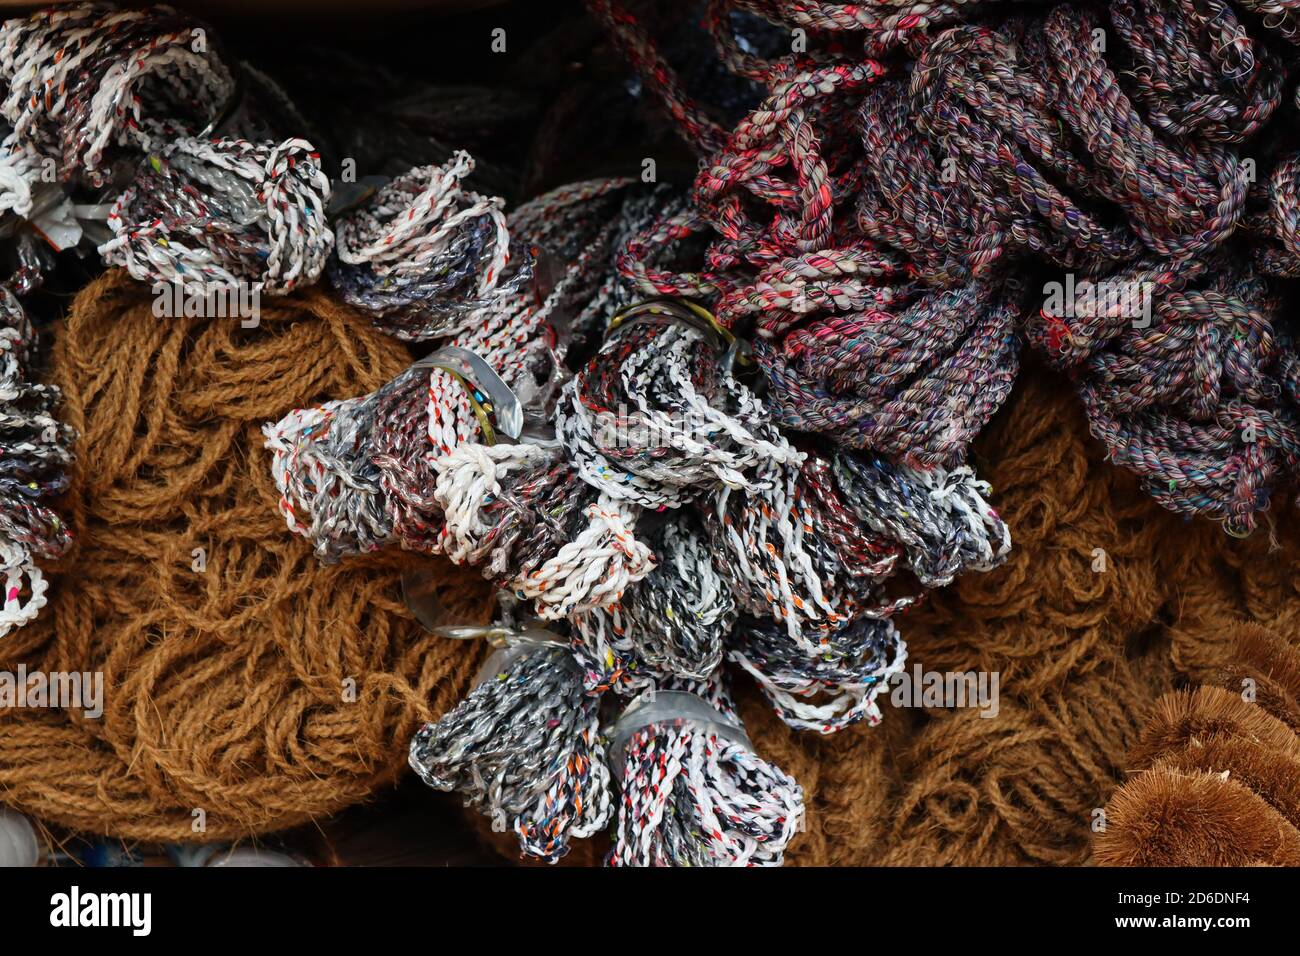 Cette industrie artisanale au Sri Lanka comprend des balais, des cordes, des brosses, des articles de nettoyage sanitaire et des cordes dures qui sont fabriqués en fibre de coco. Banque D'Images